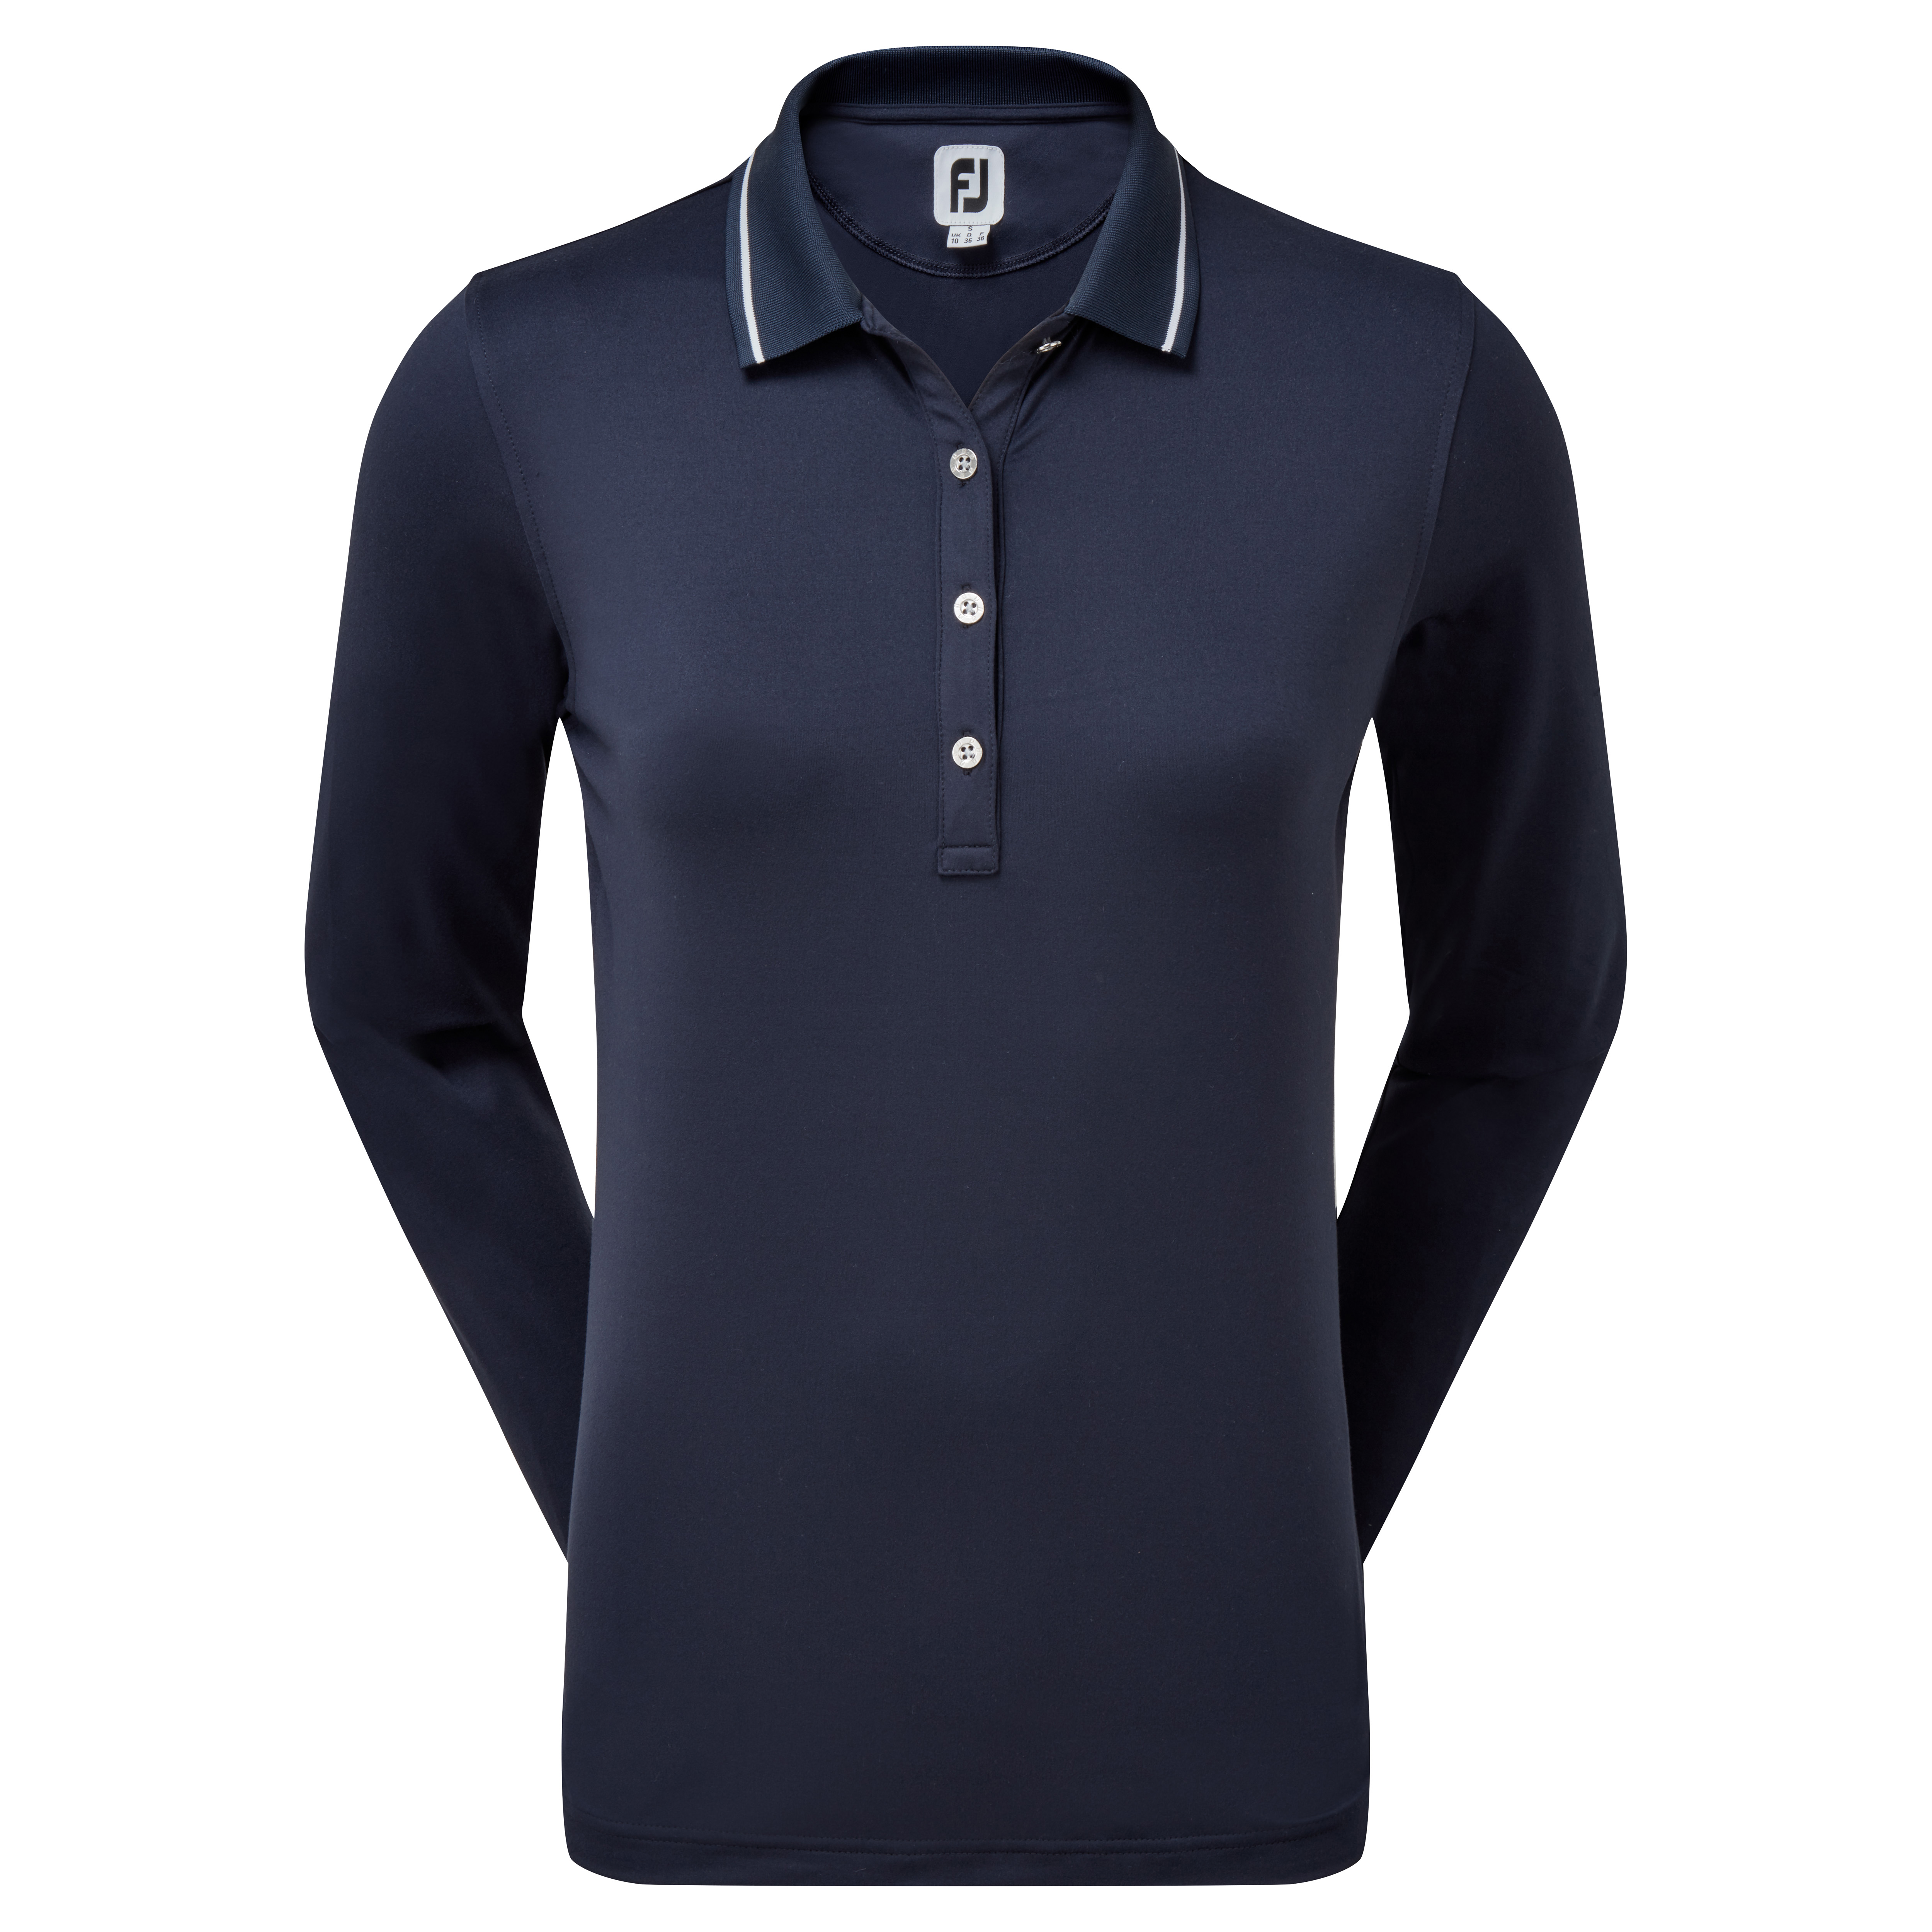 FootJoy Thermal dámské golfové triko s dlouhým rukávem, tmavě modré, vel. S